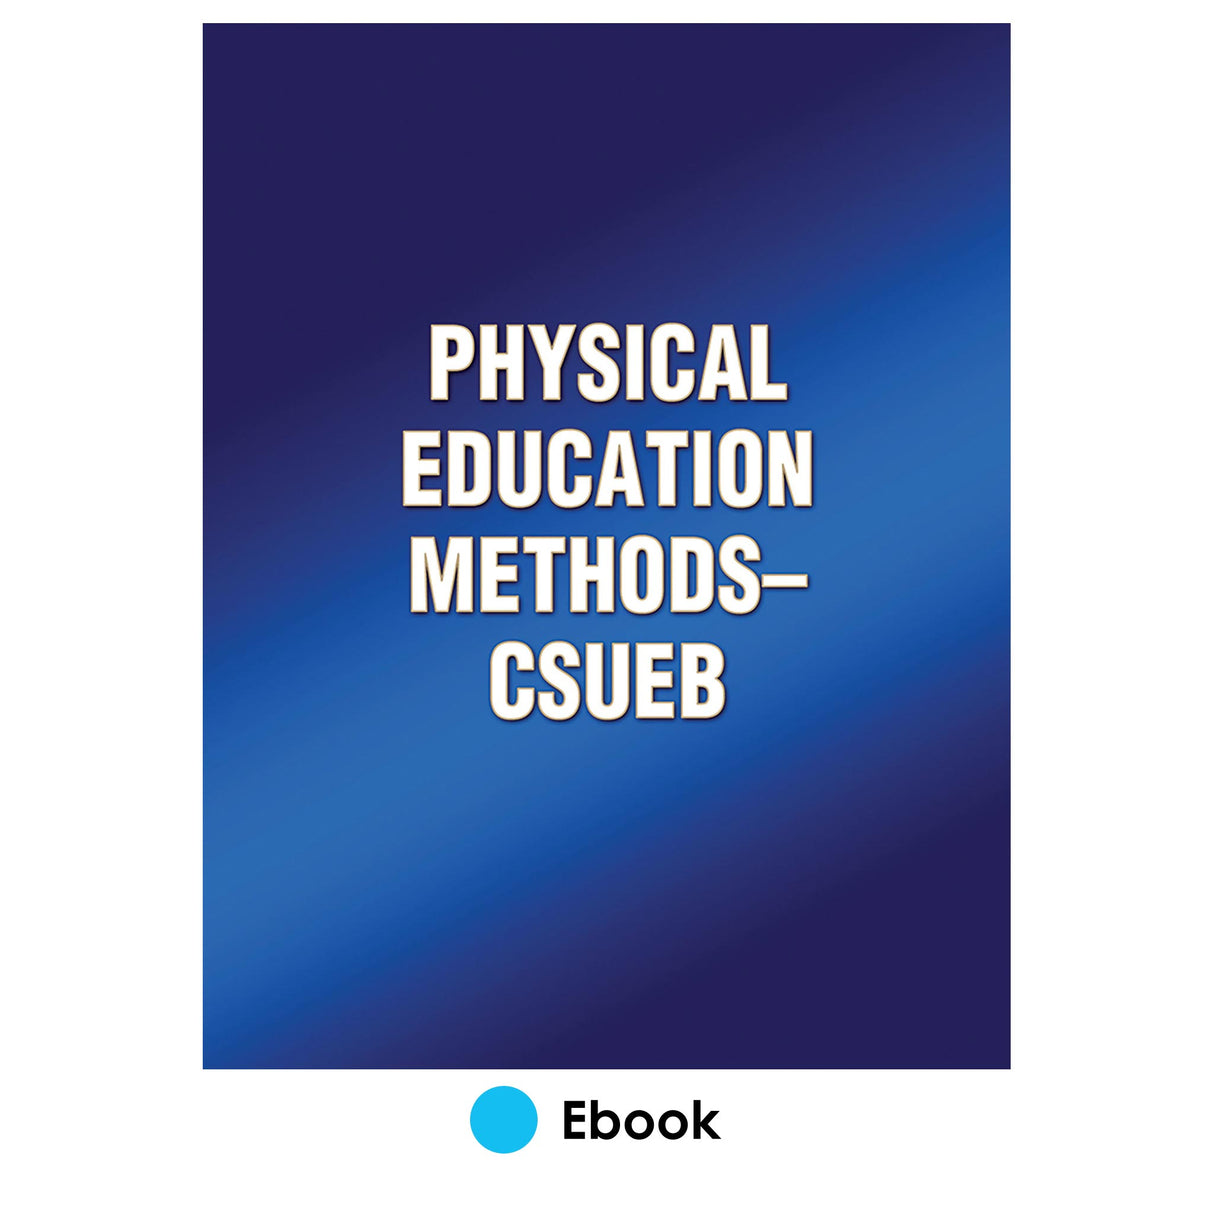 Physical Education Methods-CSUEB